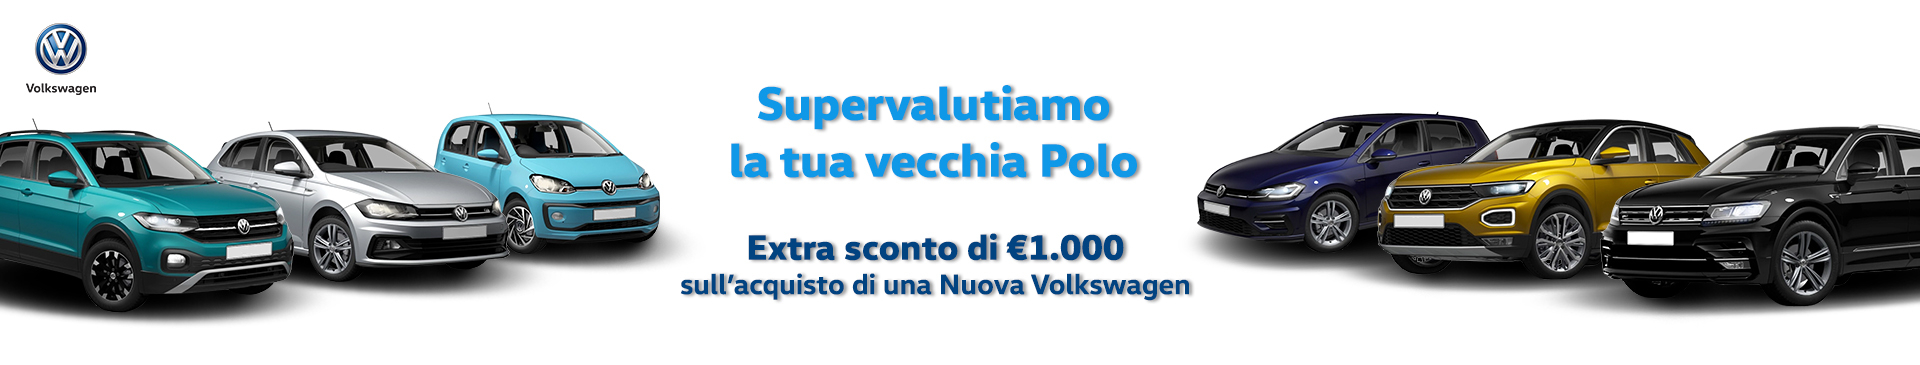 Eurocar supervaluta la tua Polo usata.